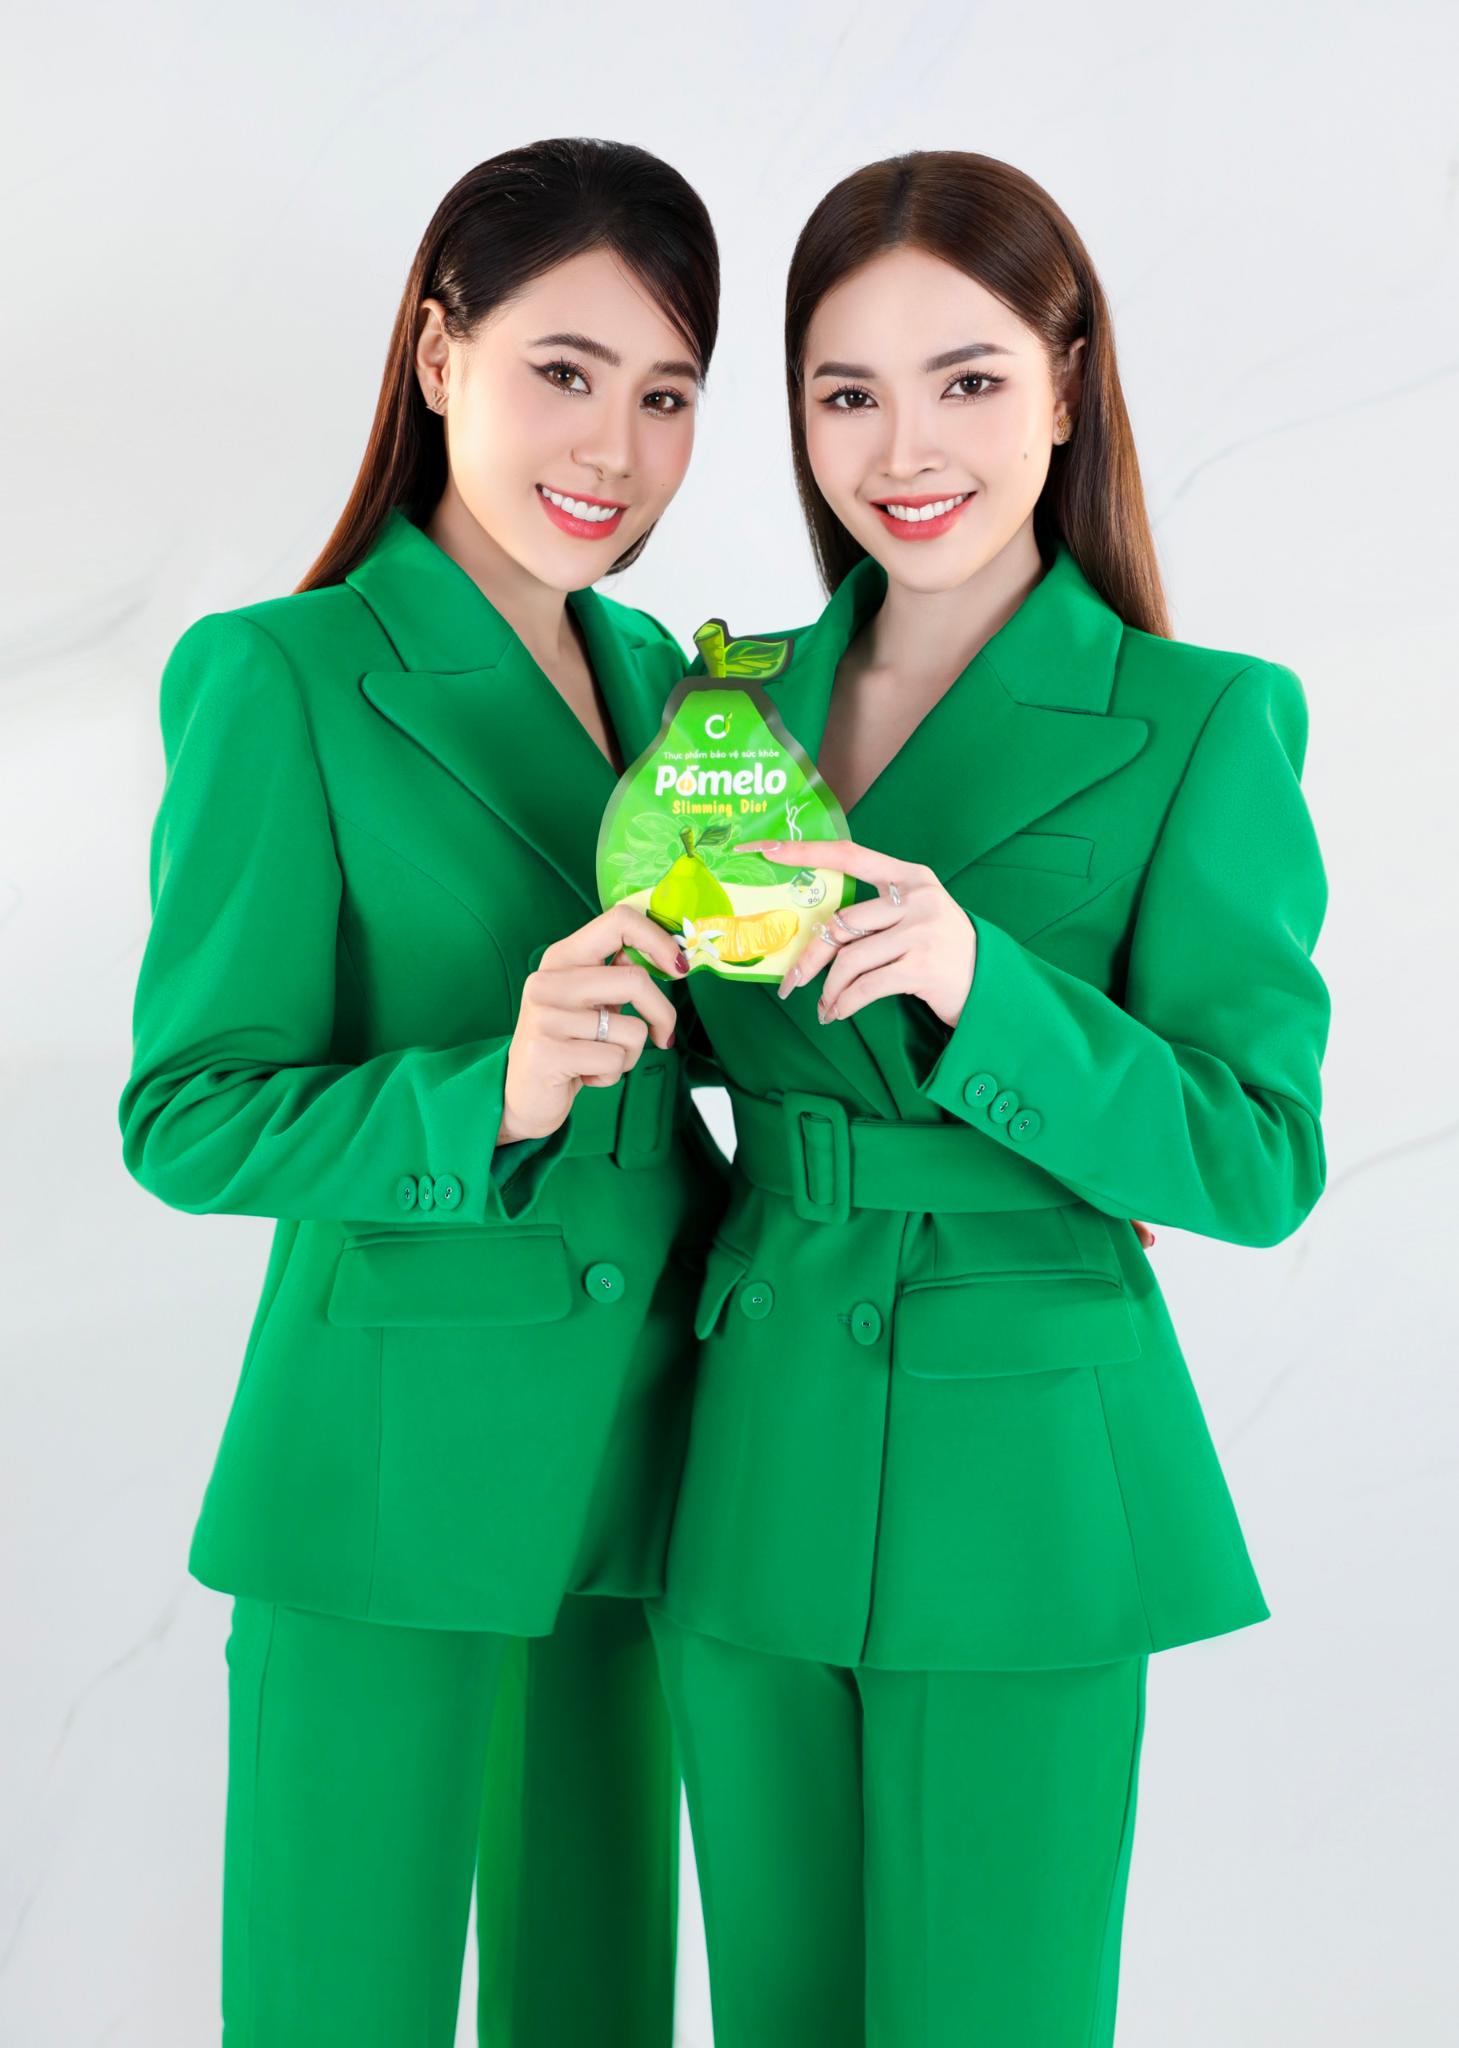 Hồ Bích Trâm ký kết hợp tác với Ci Organic, trở thành đại sứ thương hiệu và nhà phân phối “Kẹo Bưởi giảm cân” - ảnh 4